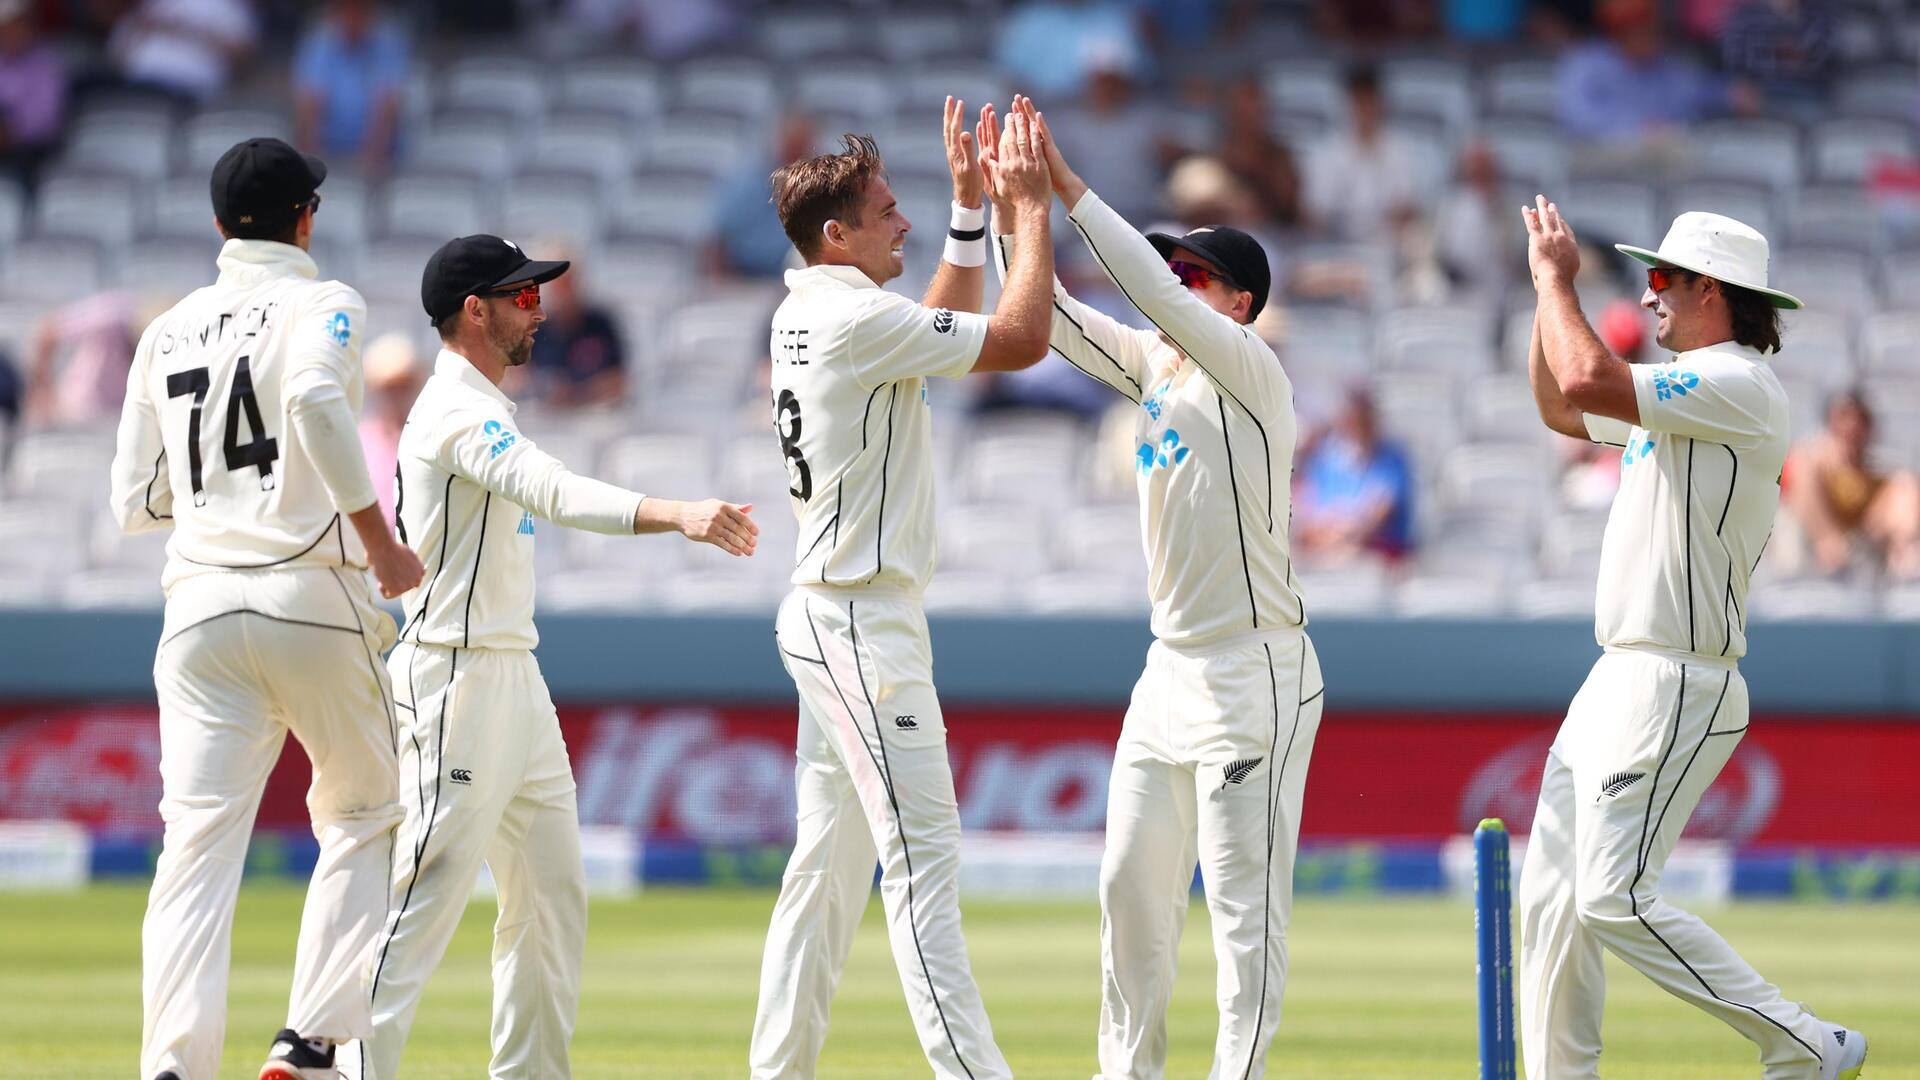 ऑस्ट्रेलिया के खिलाफ टेस्ट सीरीज के लिए न्यूजीलैंड की टीम घोषित, डेरिल मिचेल की हुई वापसी